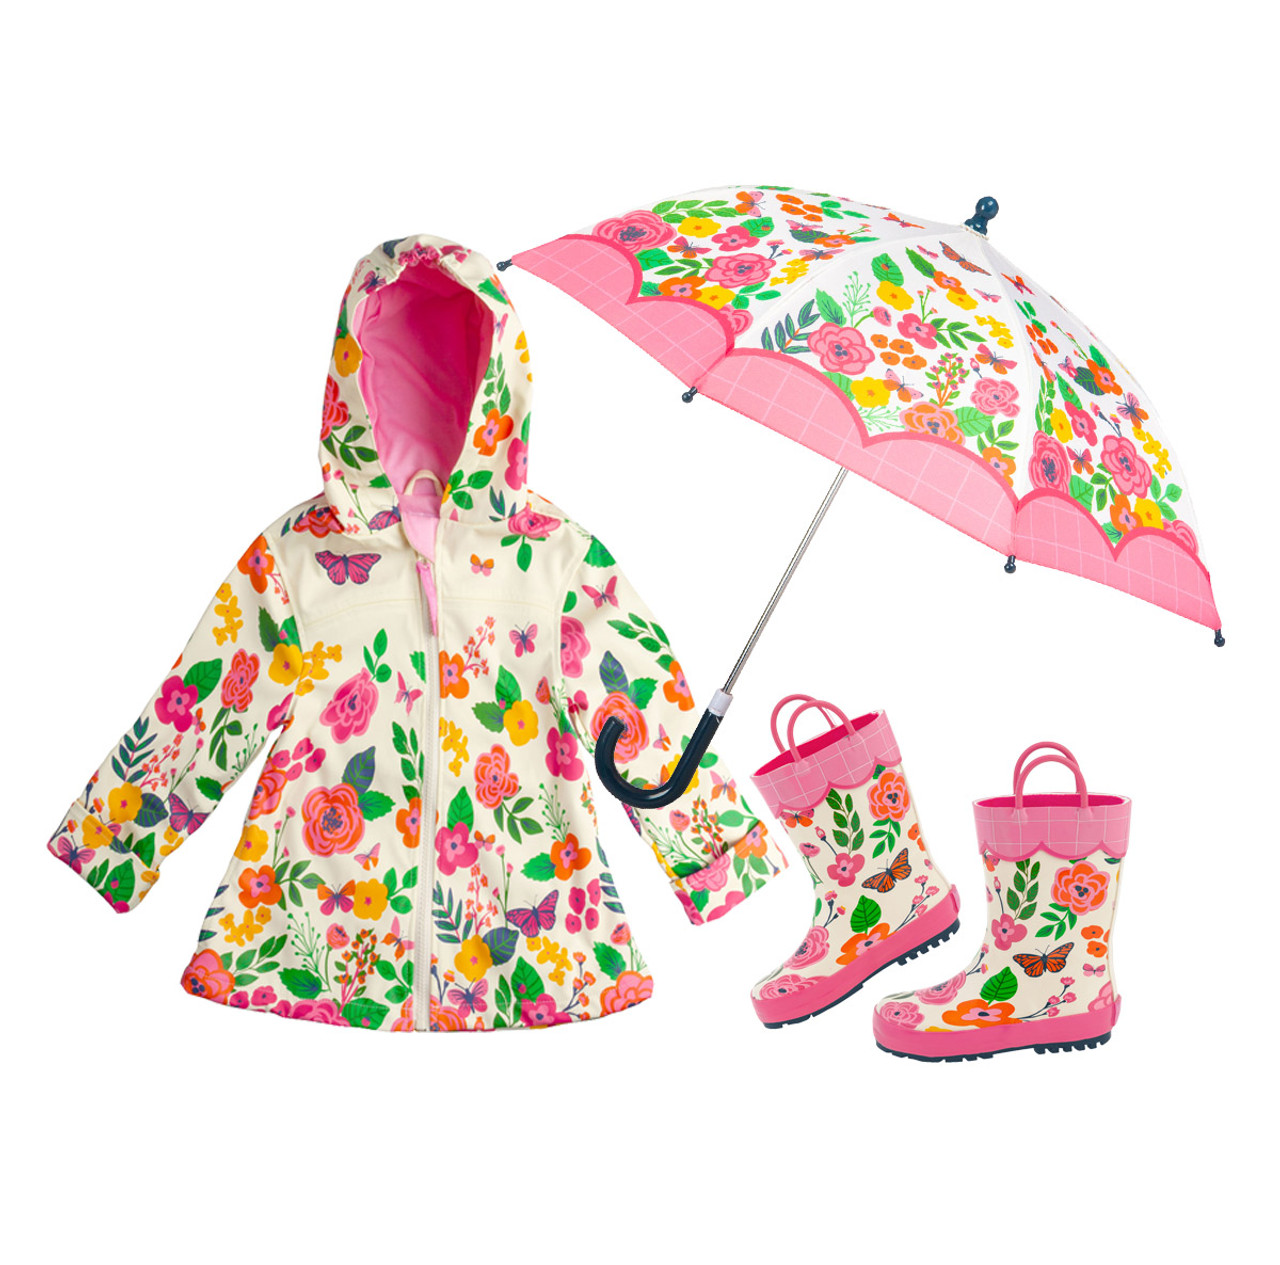 Rain Gear, Rain Jackets & Footwear